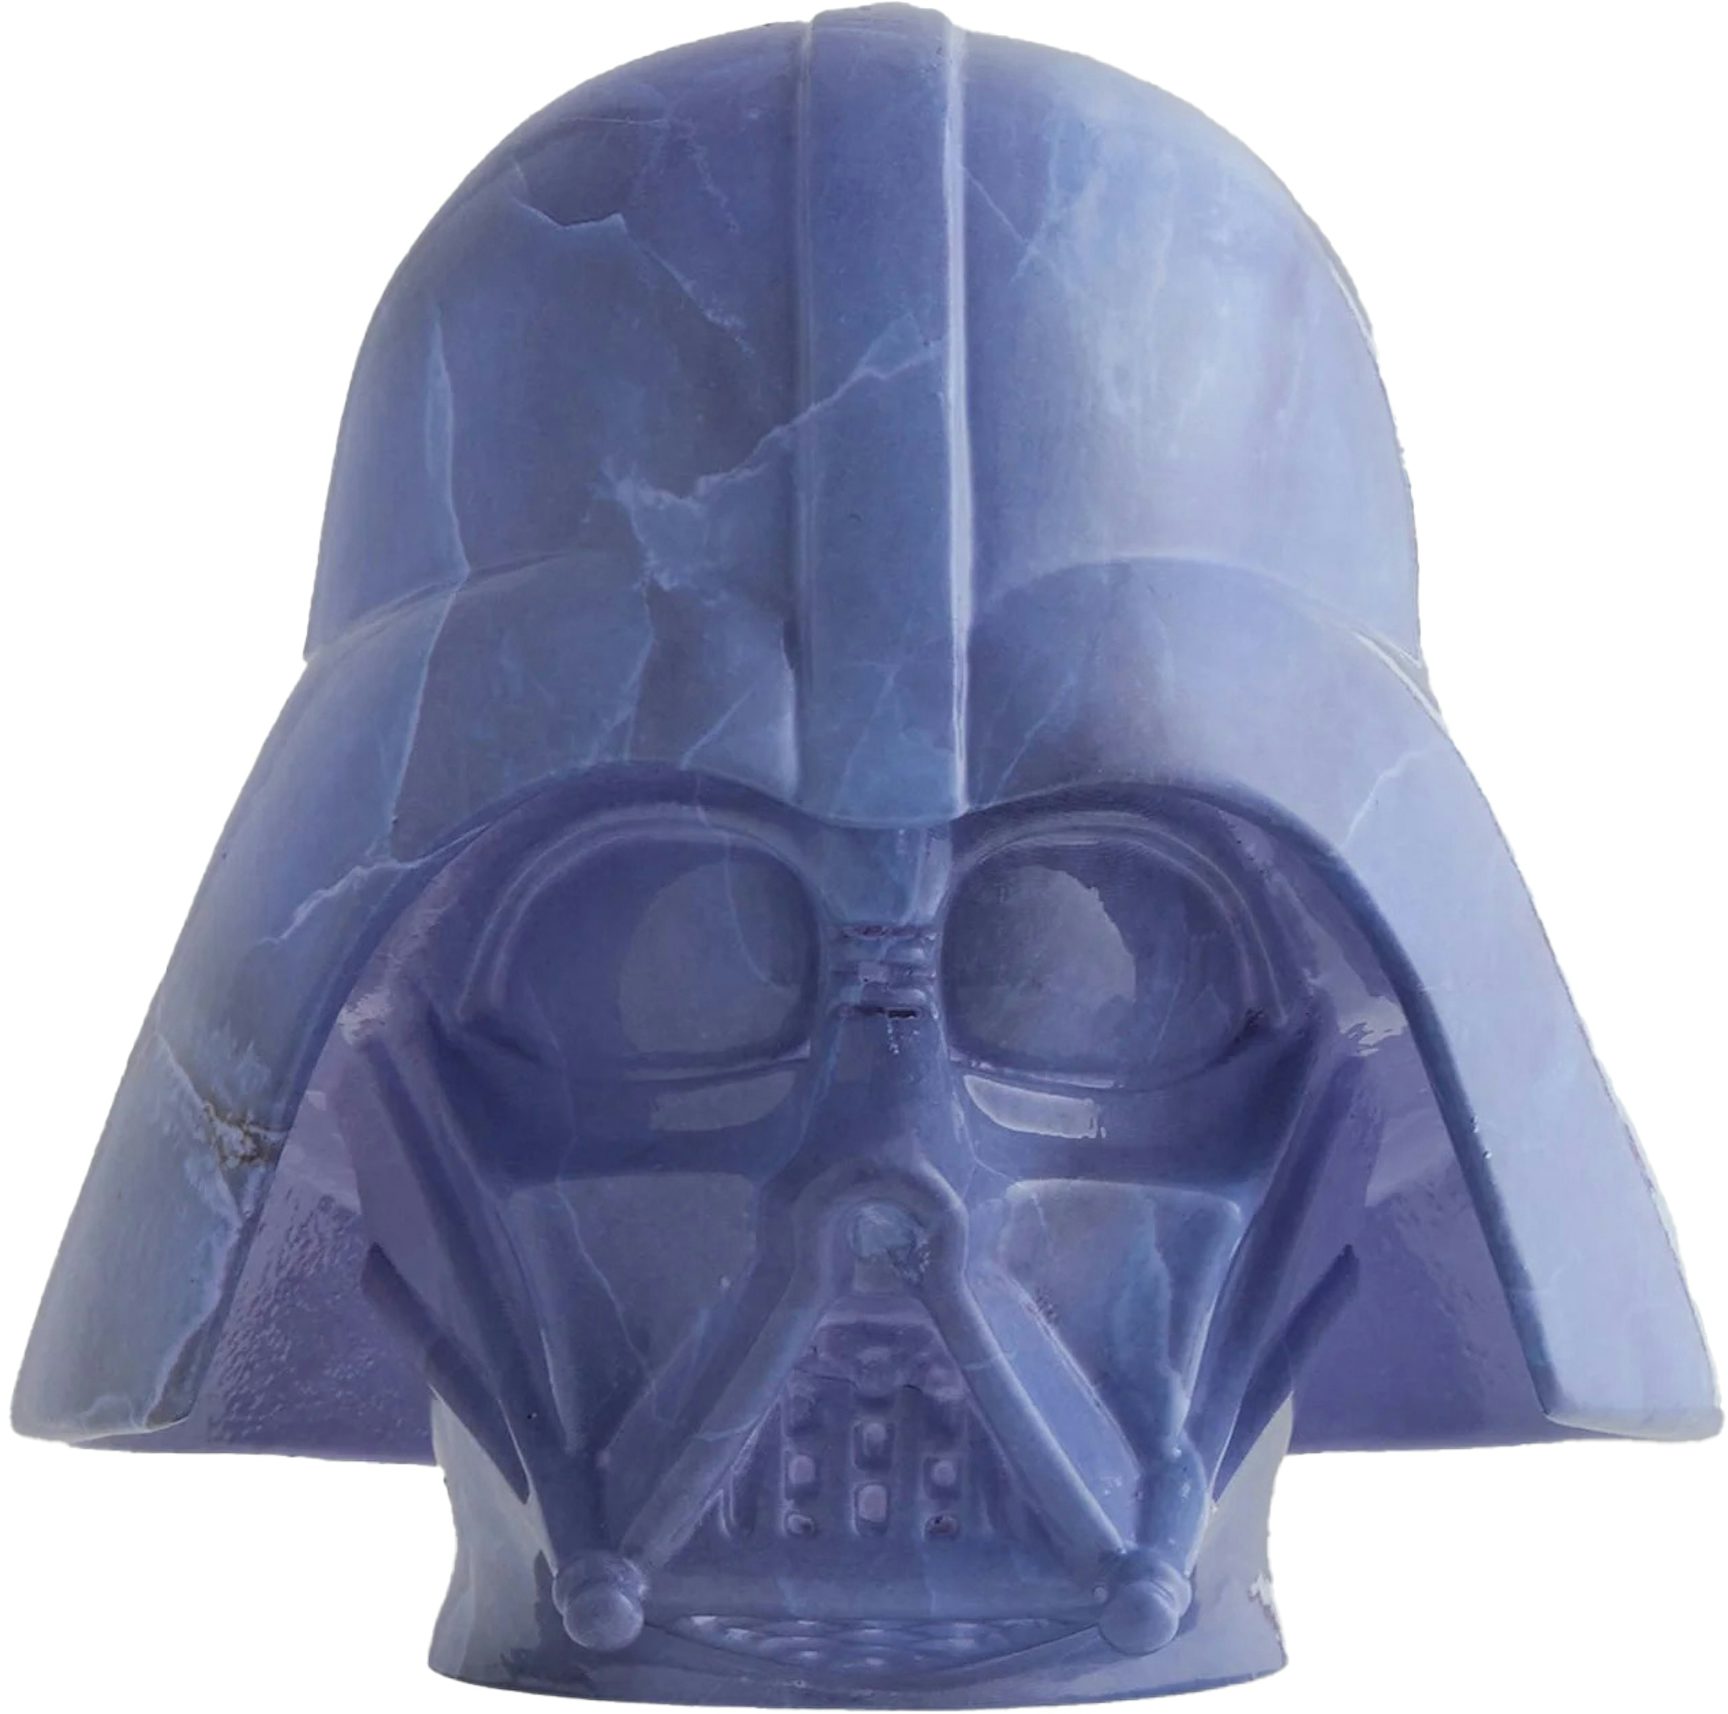 Kith x STAR WARS Darth Vader Helmet PH - - US